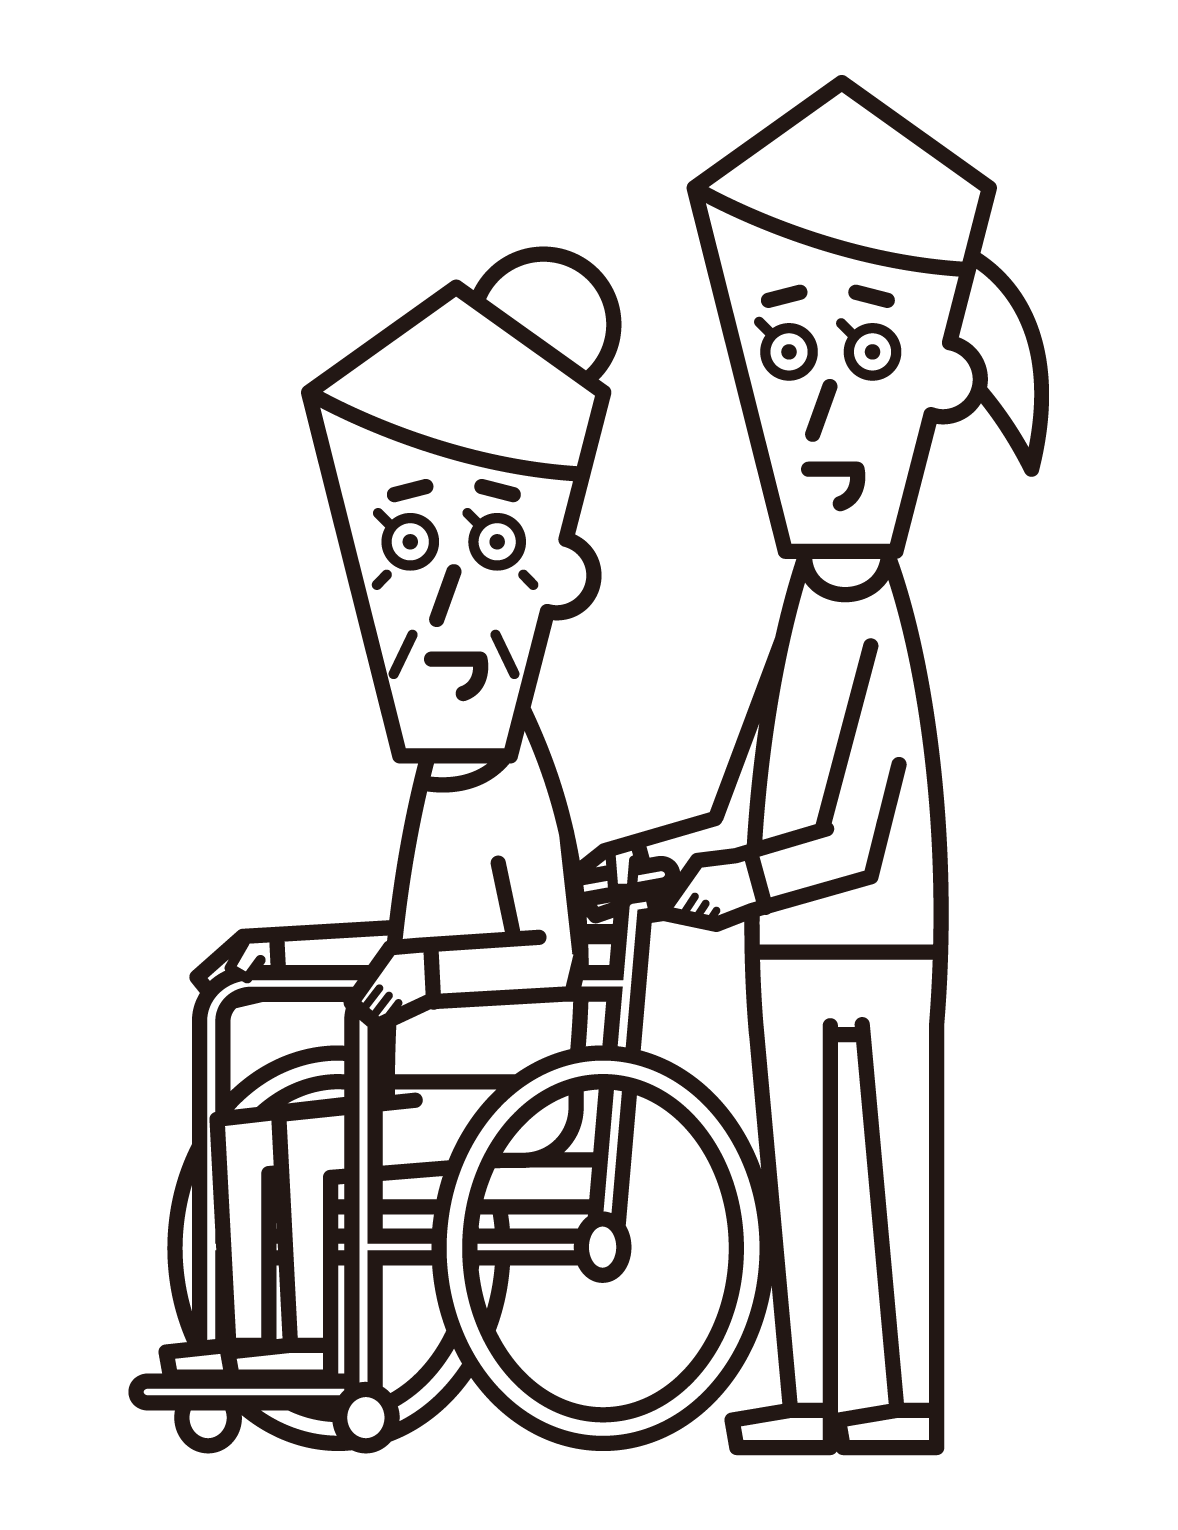 휠체어를 탄 사람(할머니)과 푸셔(여성)의 그림